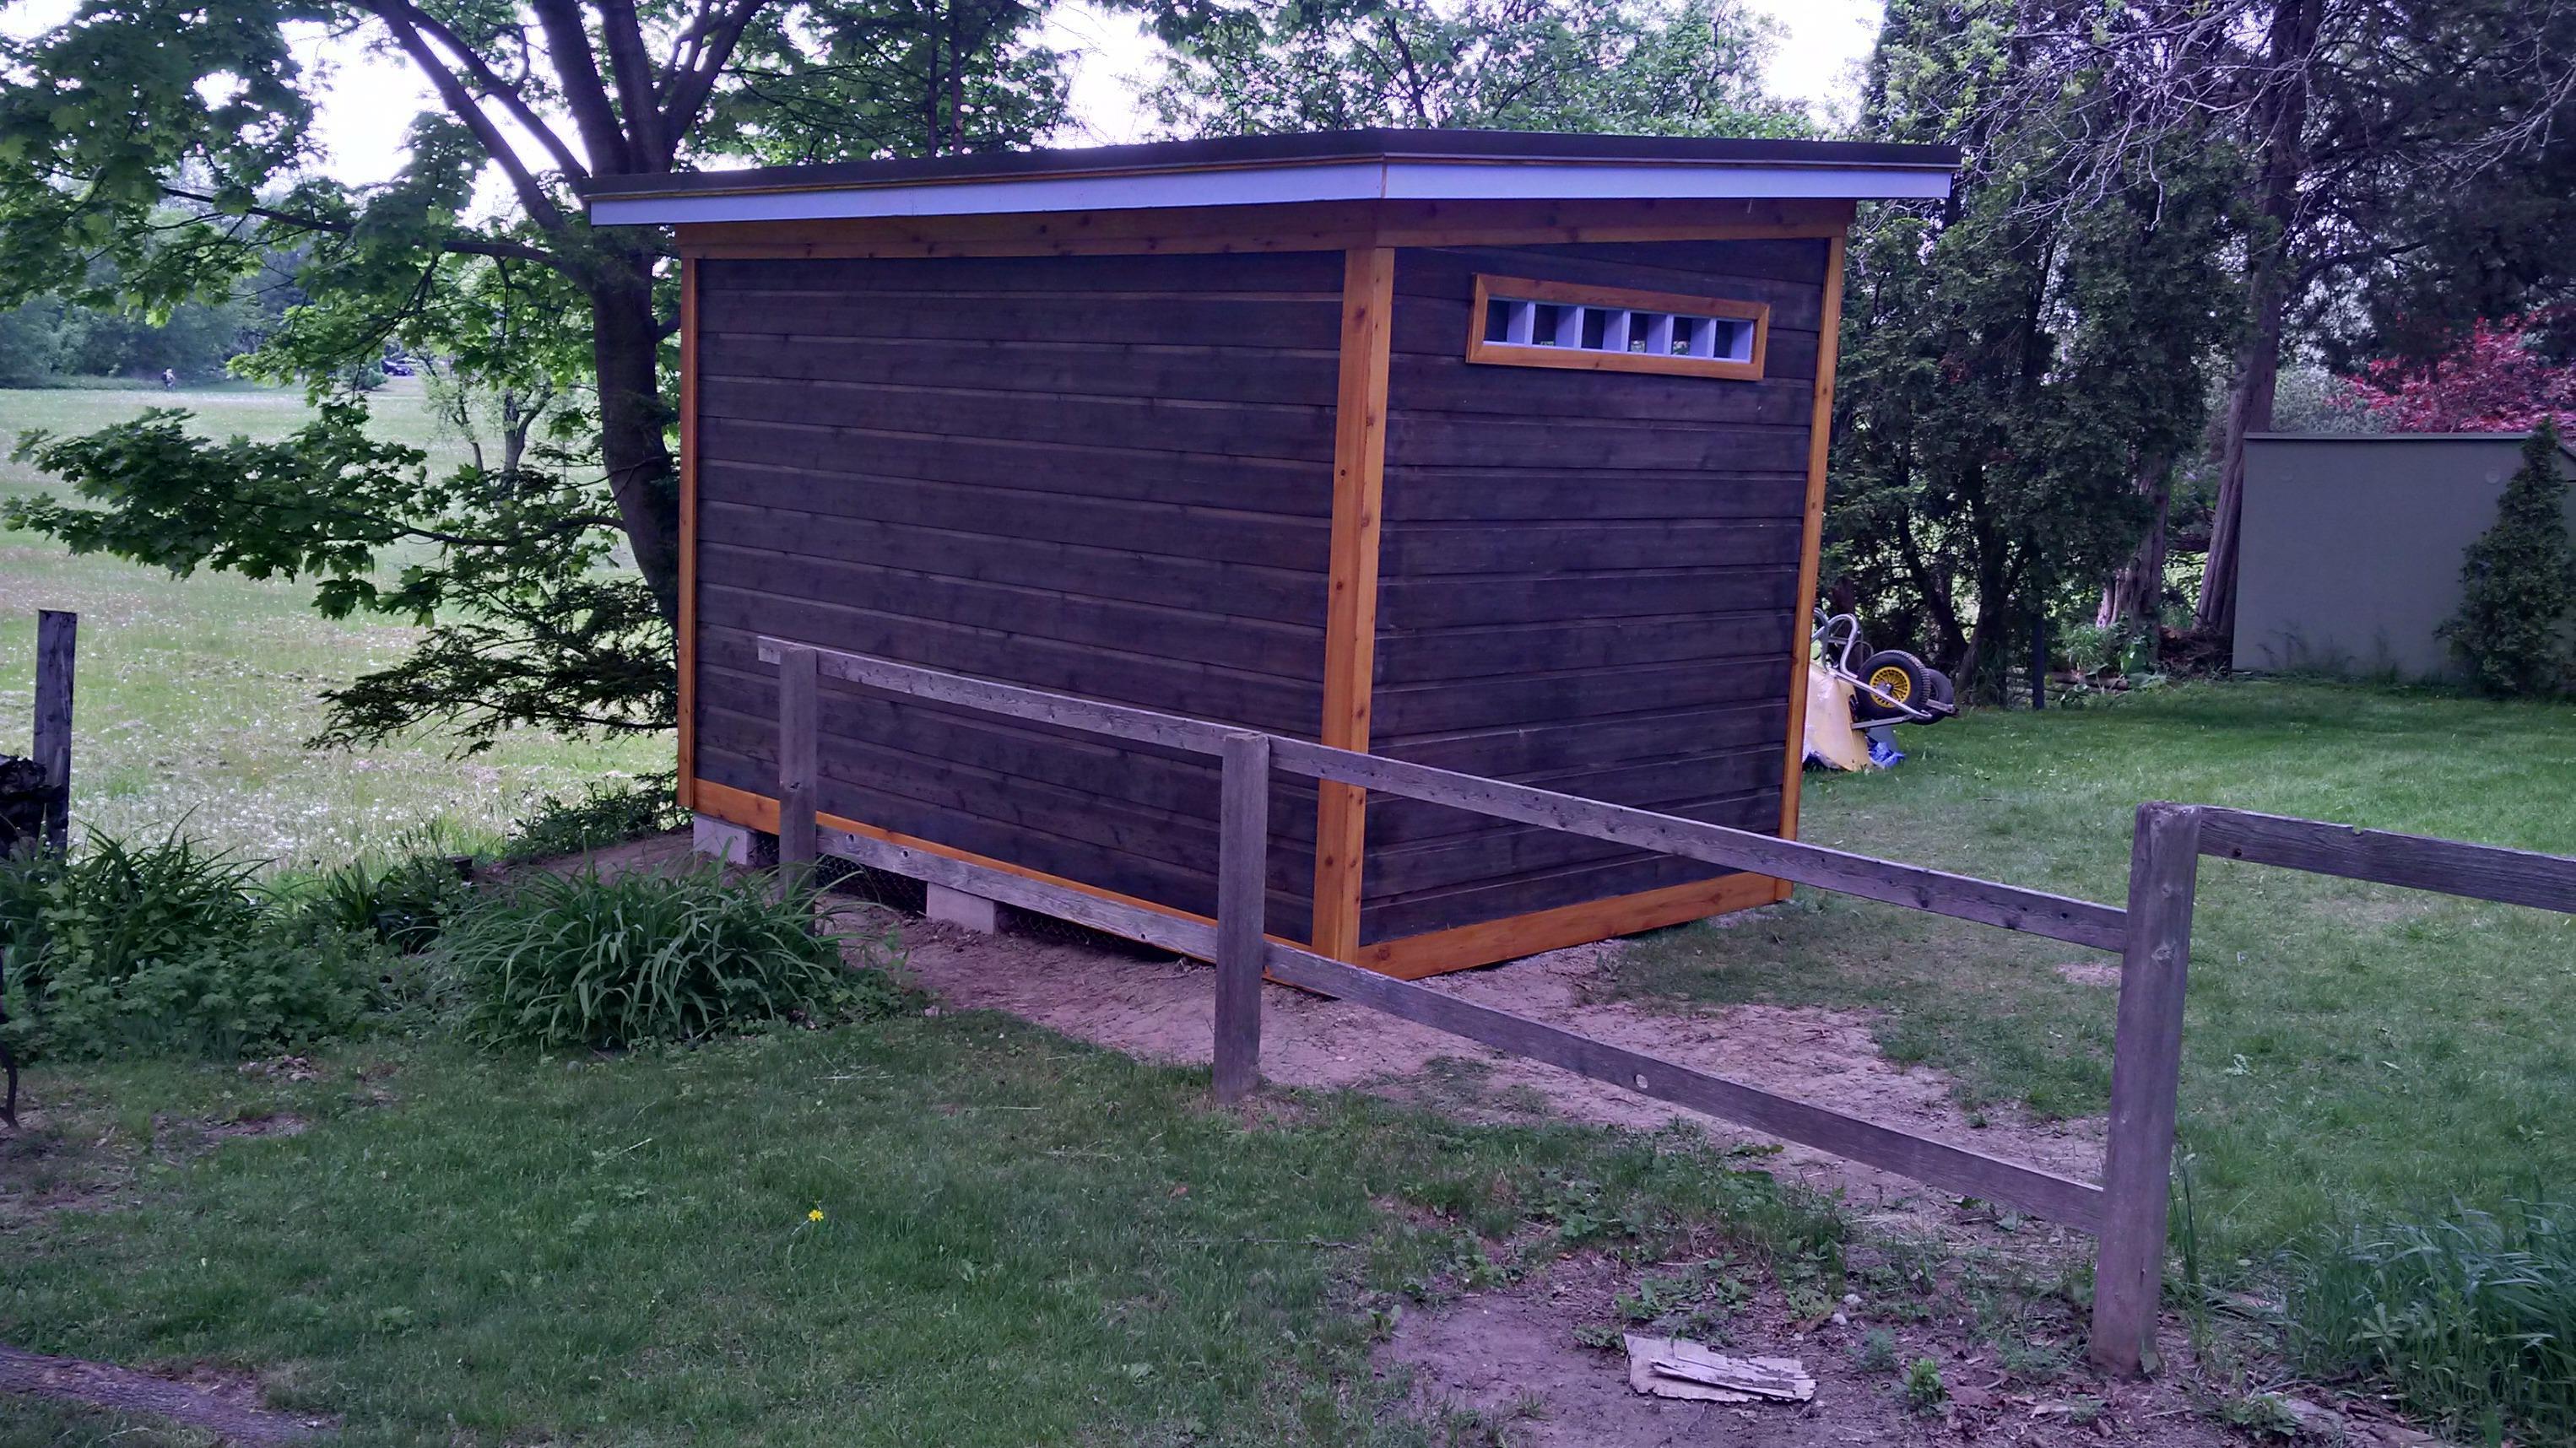 cedar urban studio garden studio 8x12 with French double doors in Etobicoke, Ontario. ID number 2025